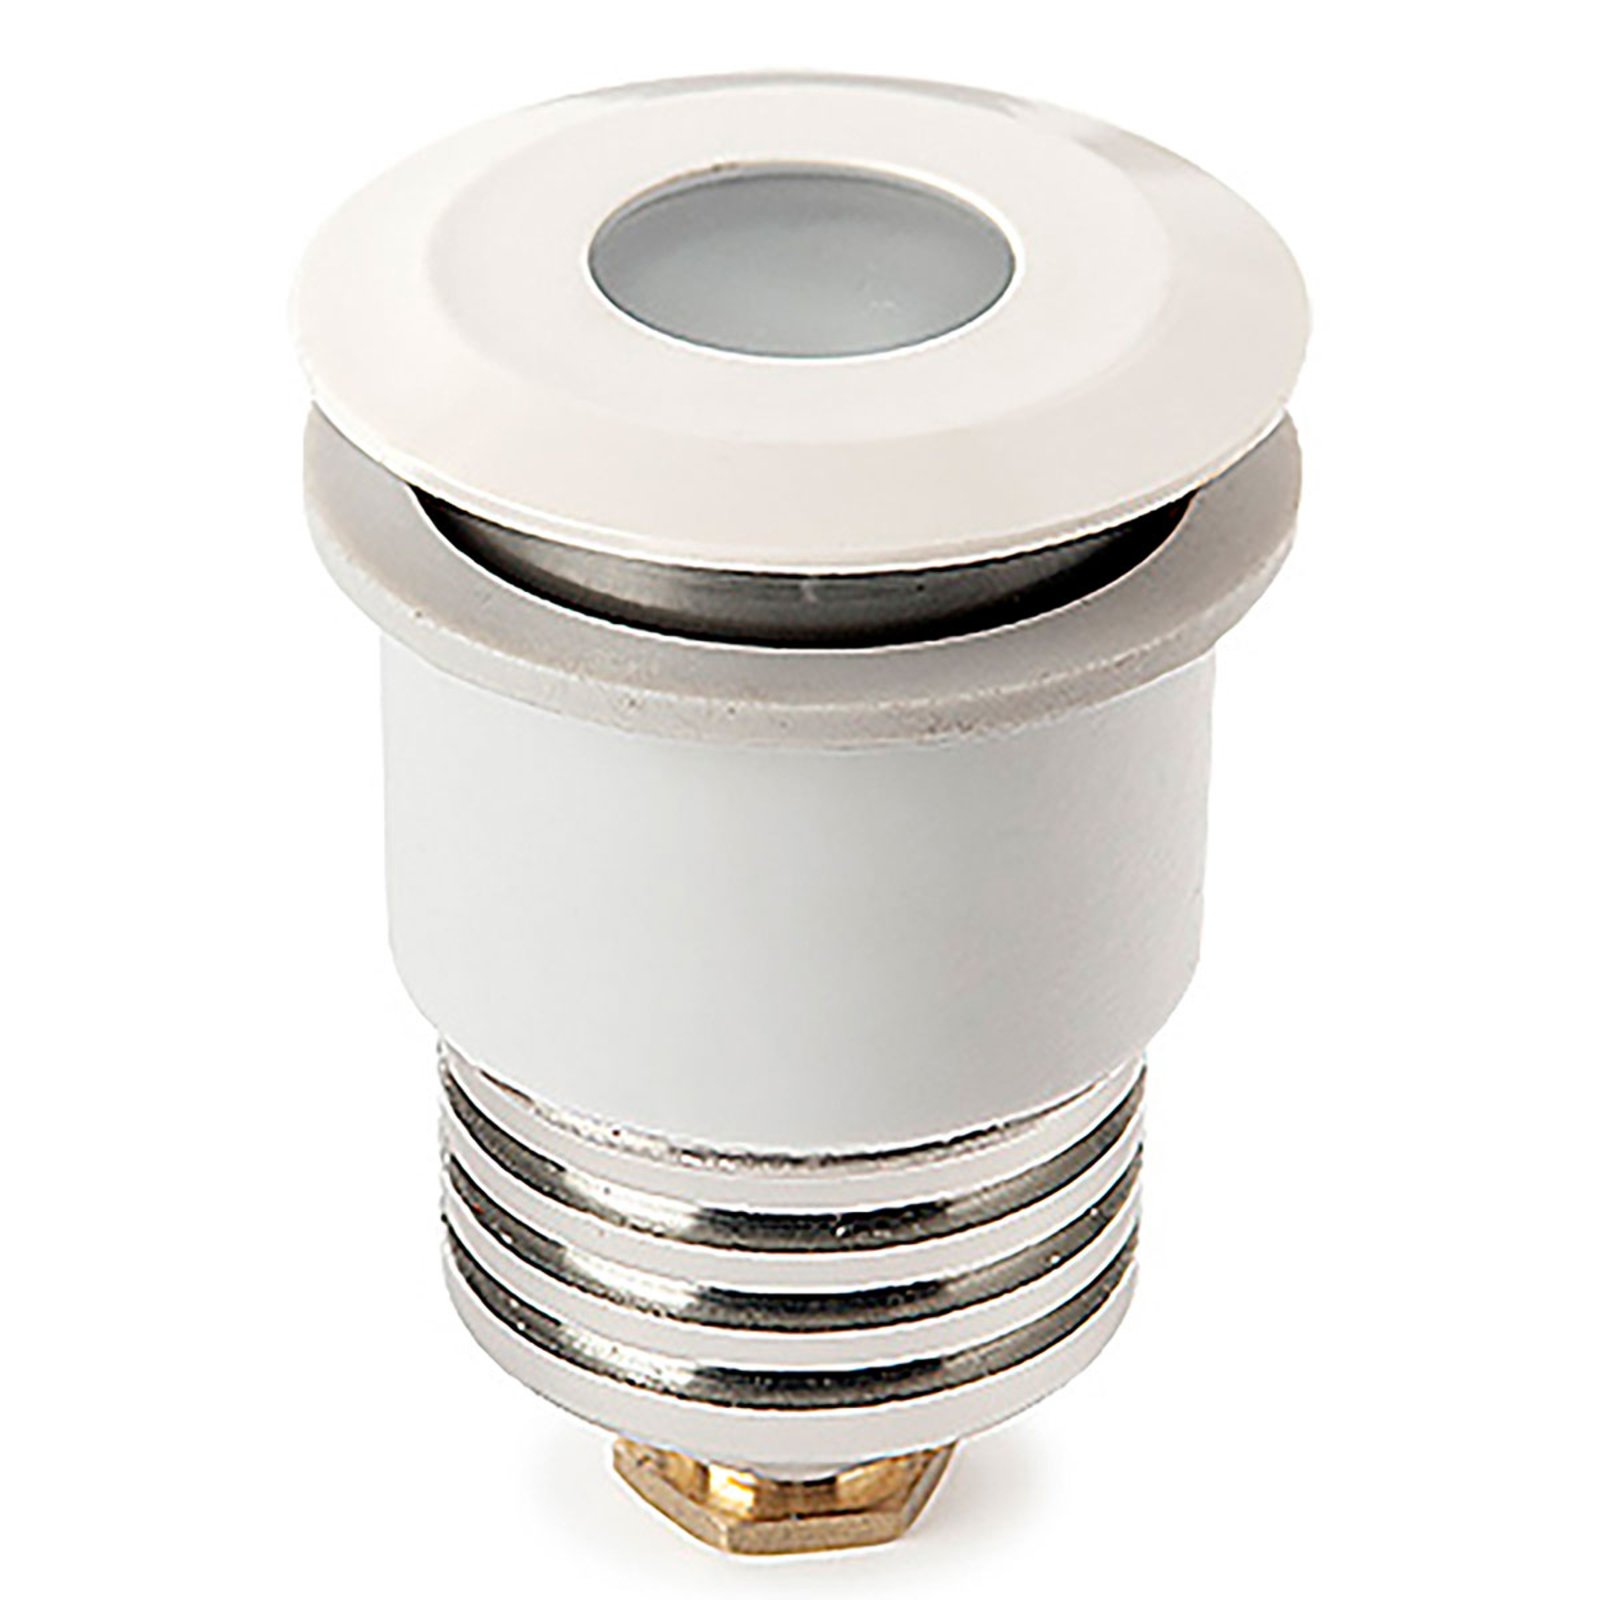 Waterdichte LED lamp Aqua Recessed | Lampen24.be